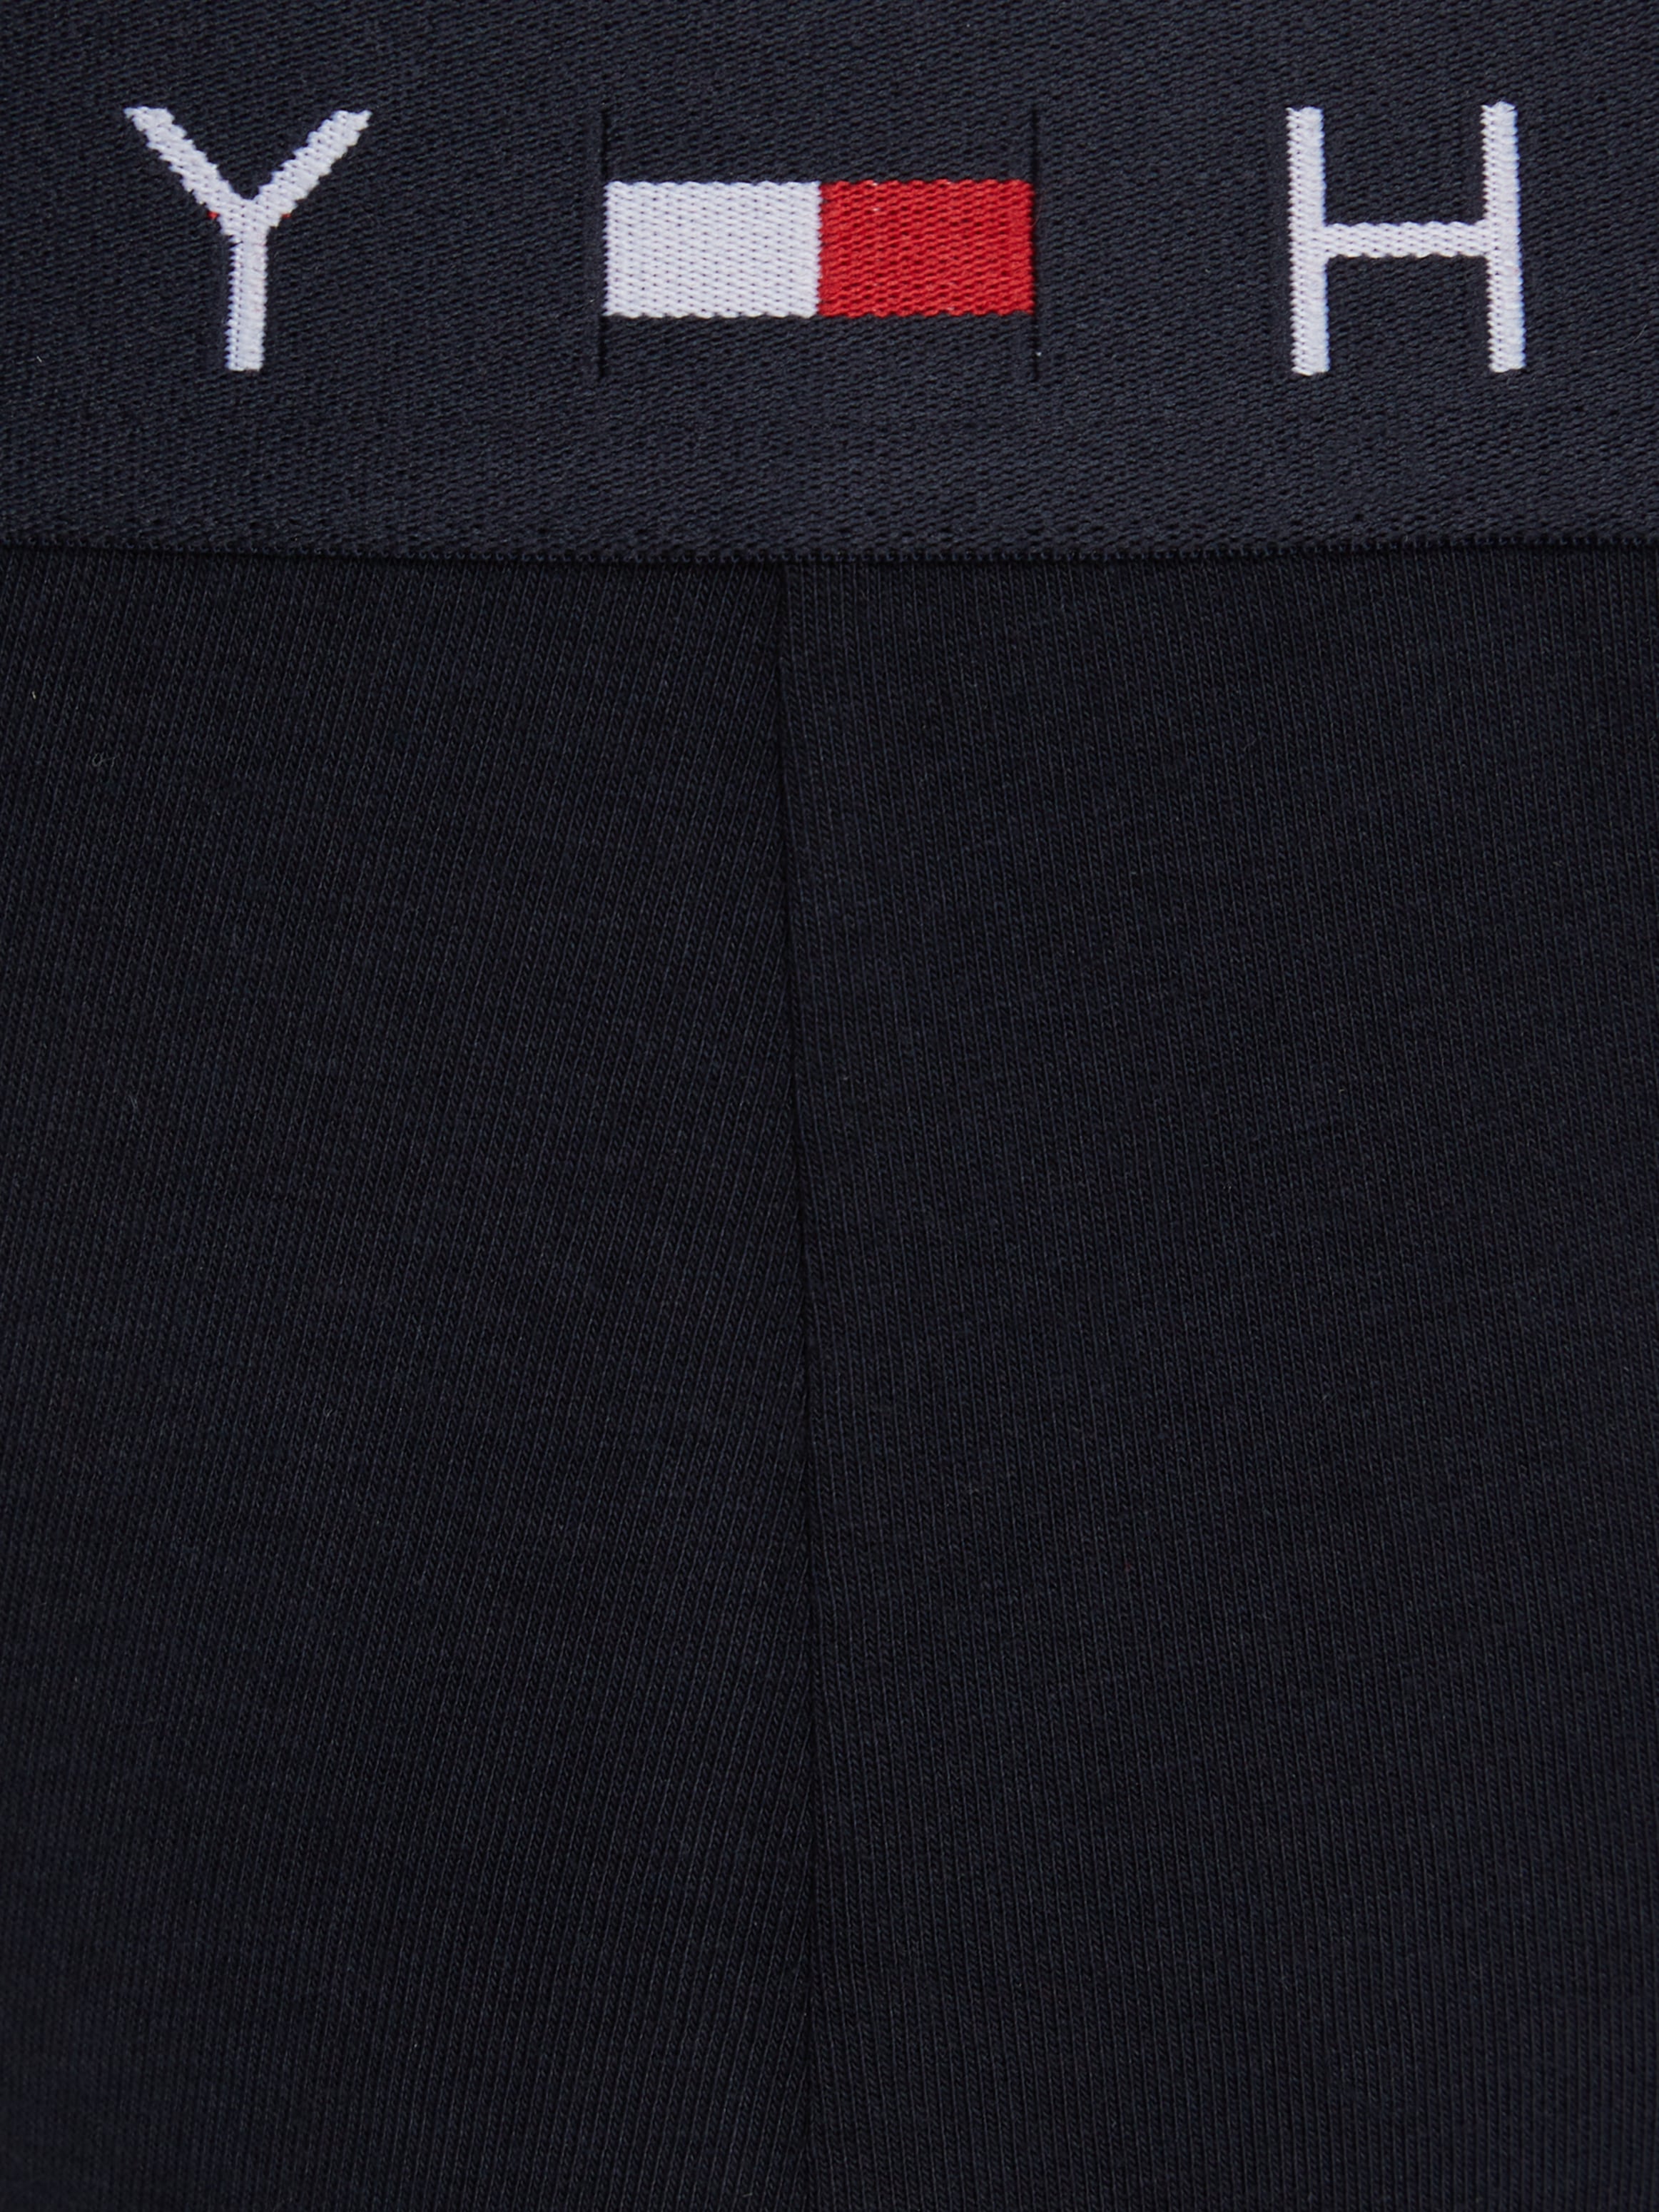 Tommy Hilfiger Underwear Slip »TH-3P BRIEF«, (Packung, 3er), mit Tommy Hilfiger Logoschriftzug